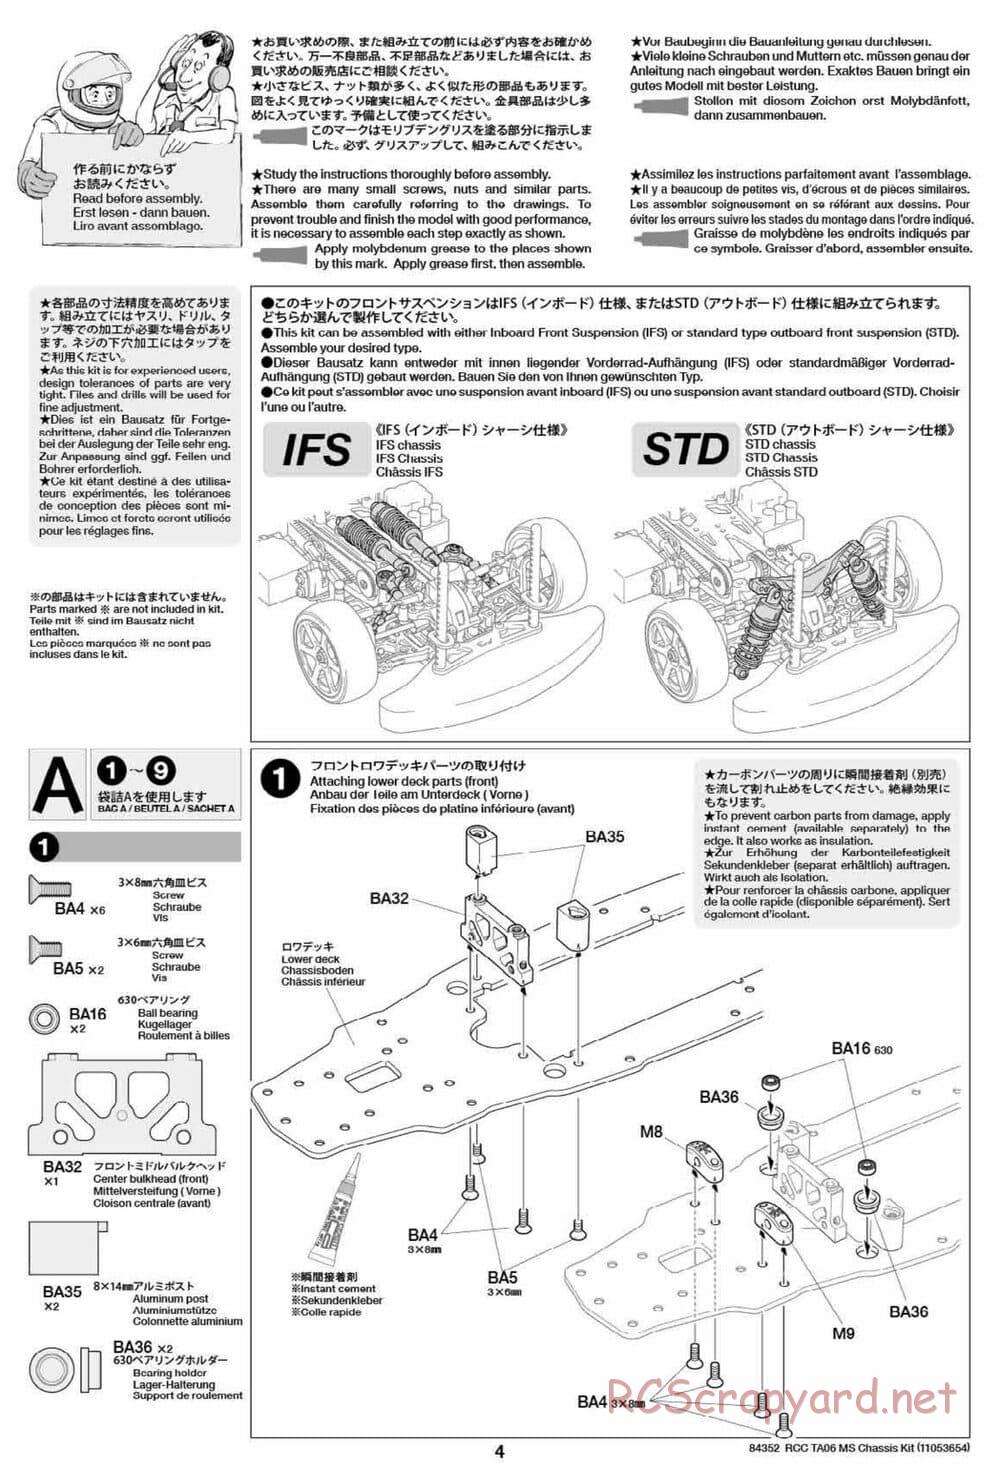 Tamiya - TA06 MS Chassis - Manual - Page 4